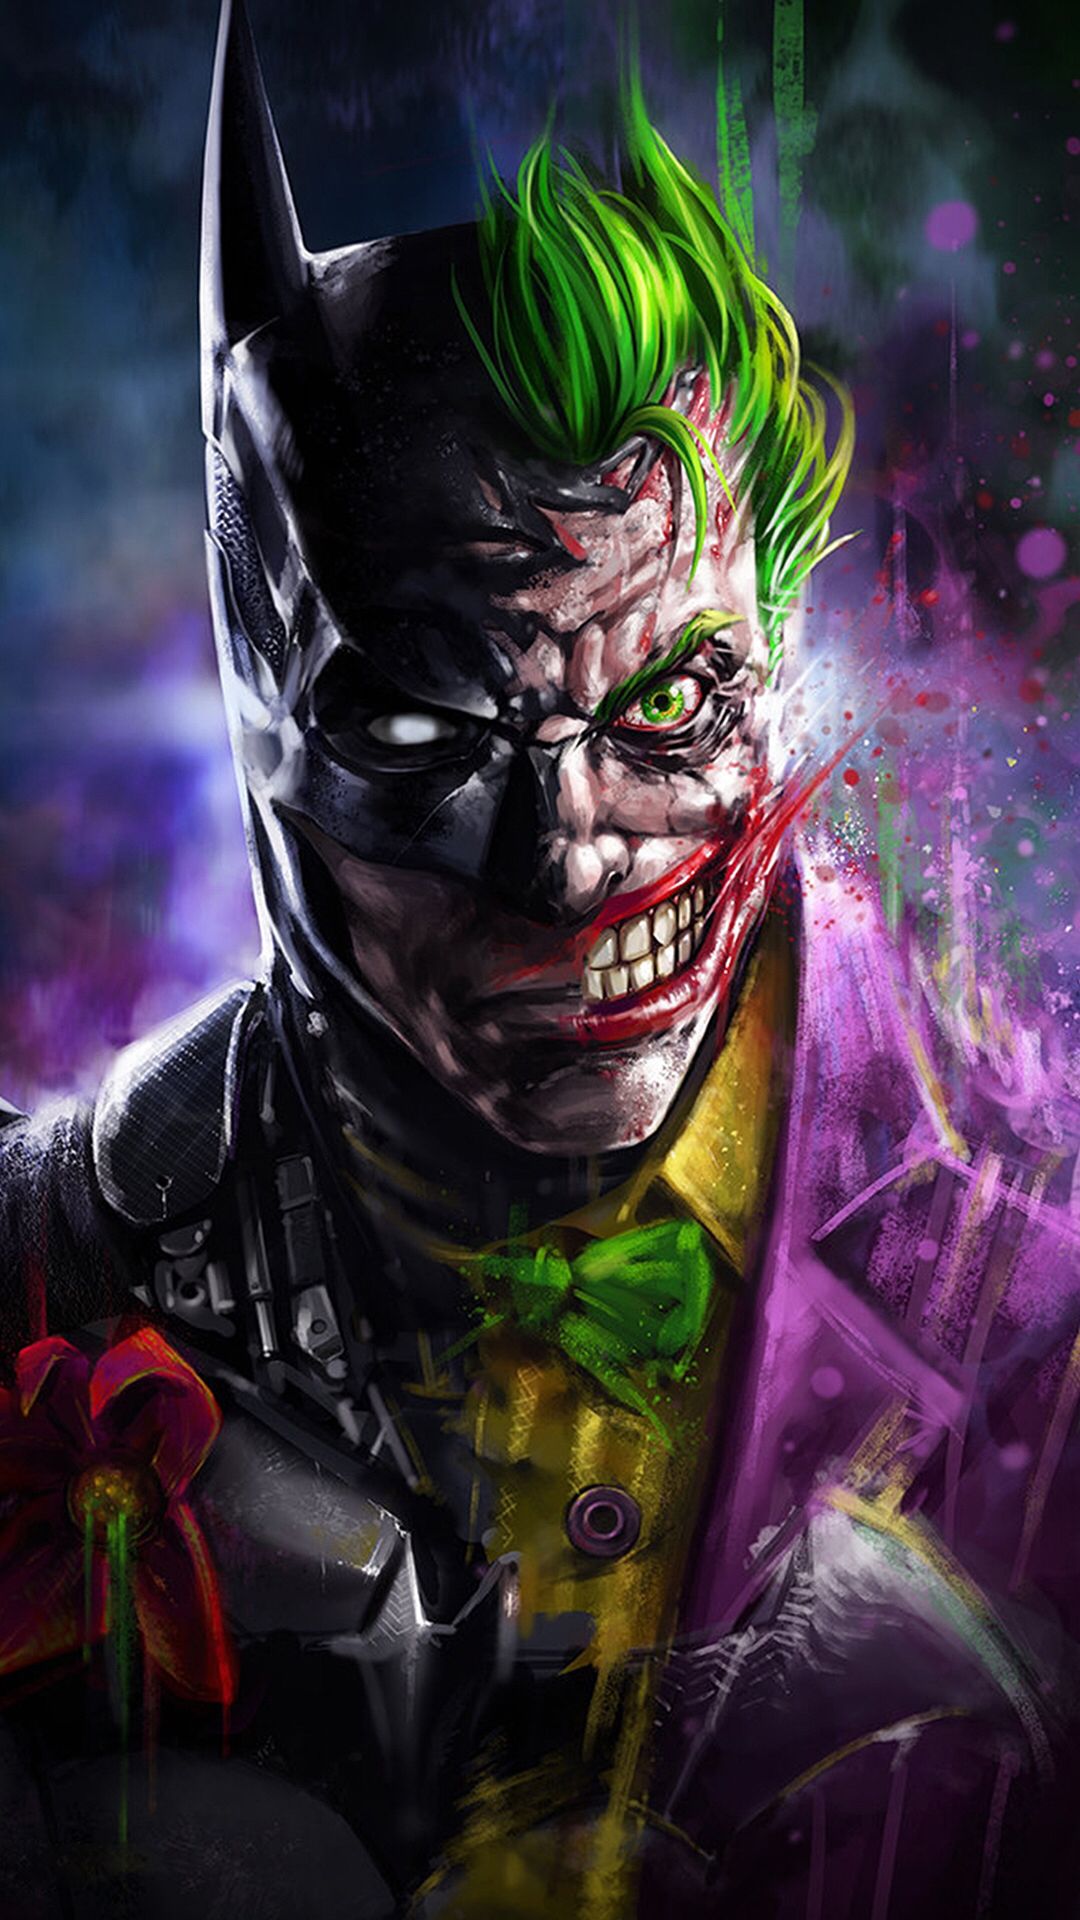 Batman And Joker Face - 1080x1920 Wallpaper 